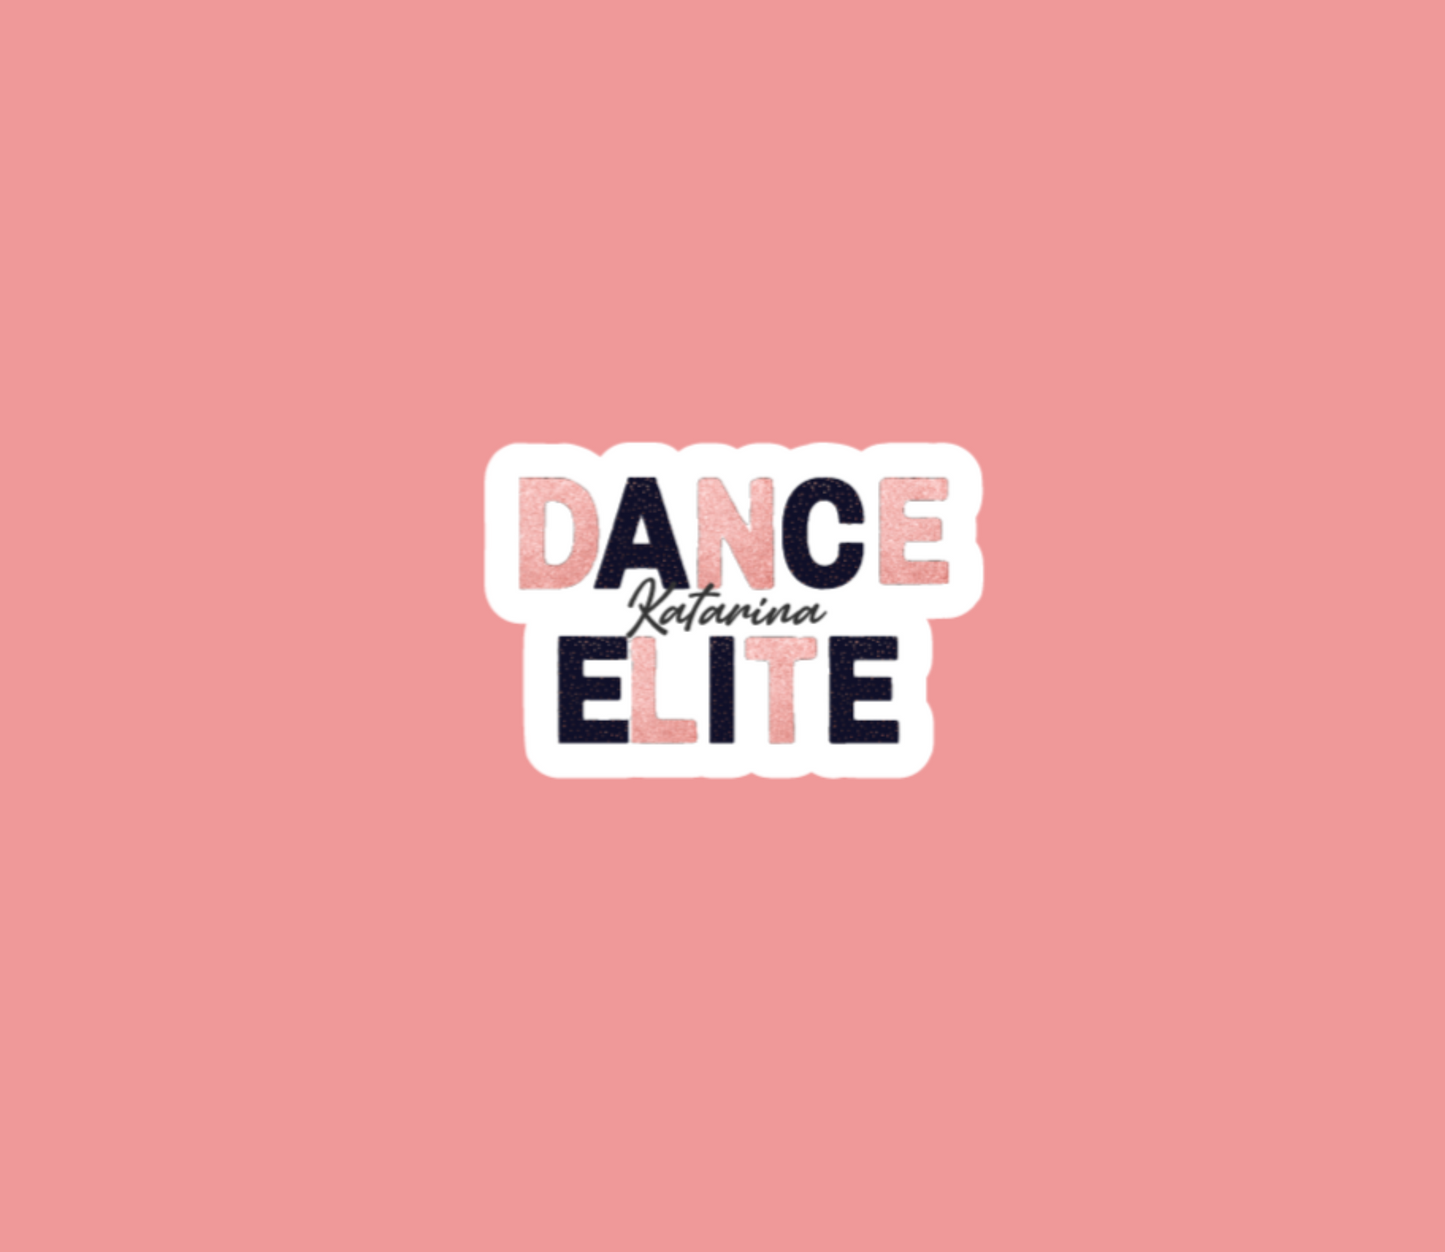 Dance Elite Sticker